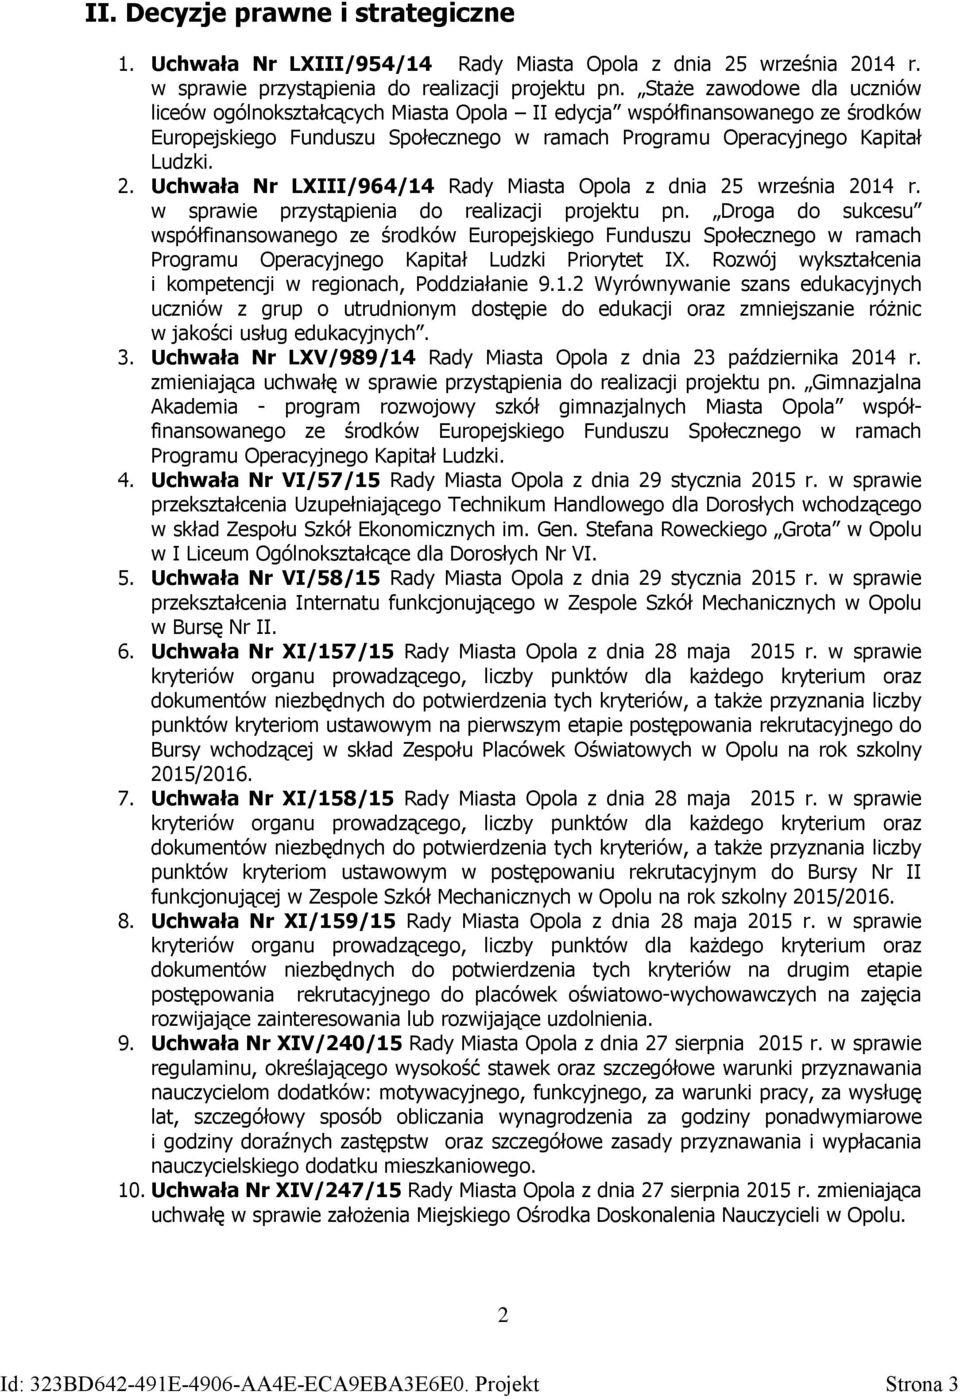 Uchwała Nr LXIII/964/14 Rady Miasta Opola z dnia 25 września 2014 r. w sprawie przystąpienia do realizacji projektu pn.